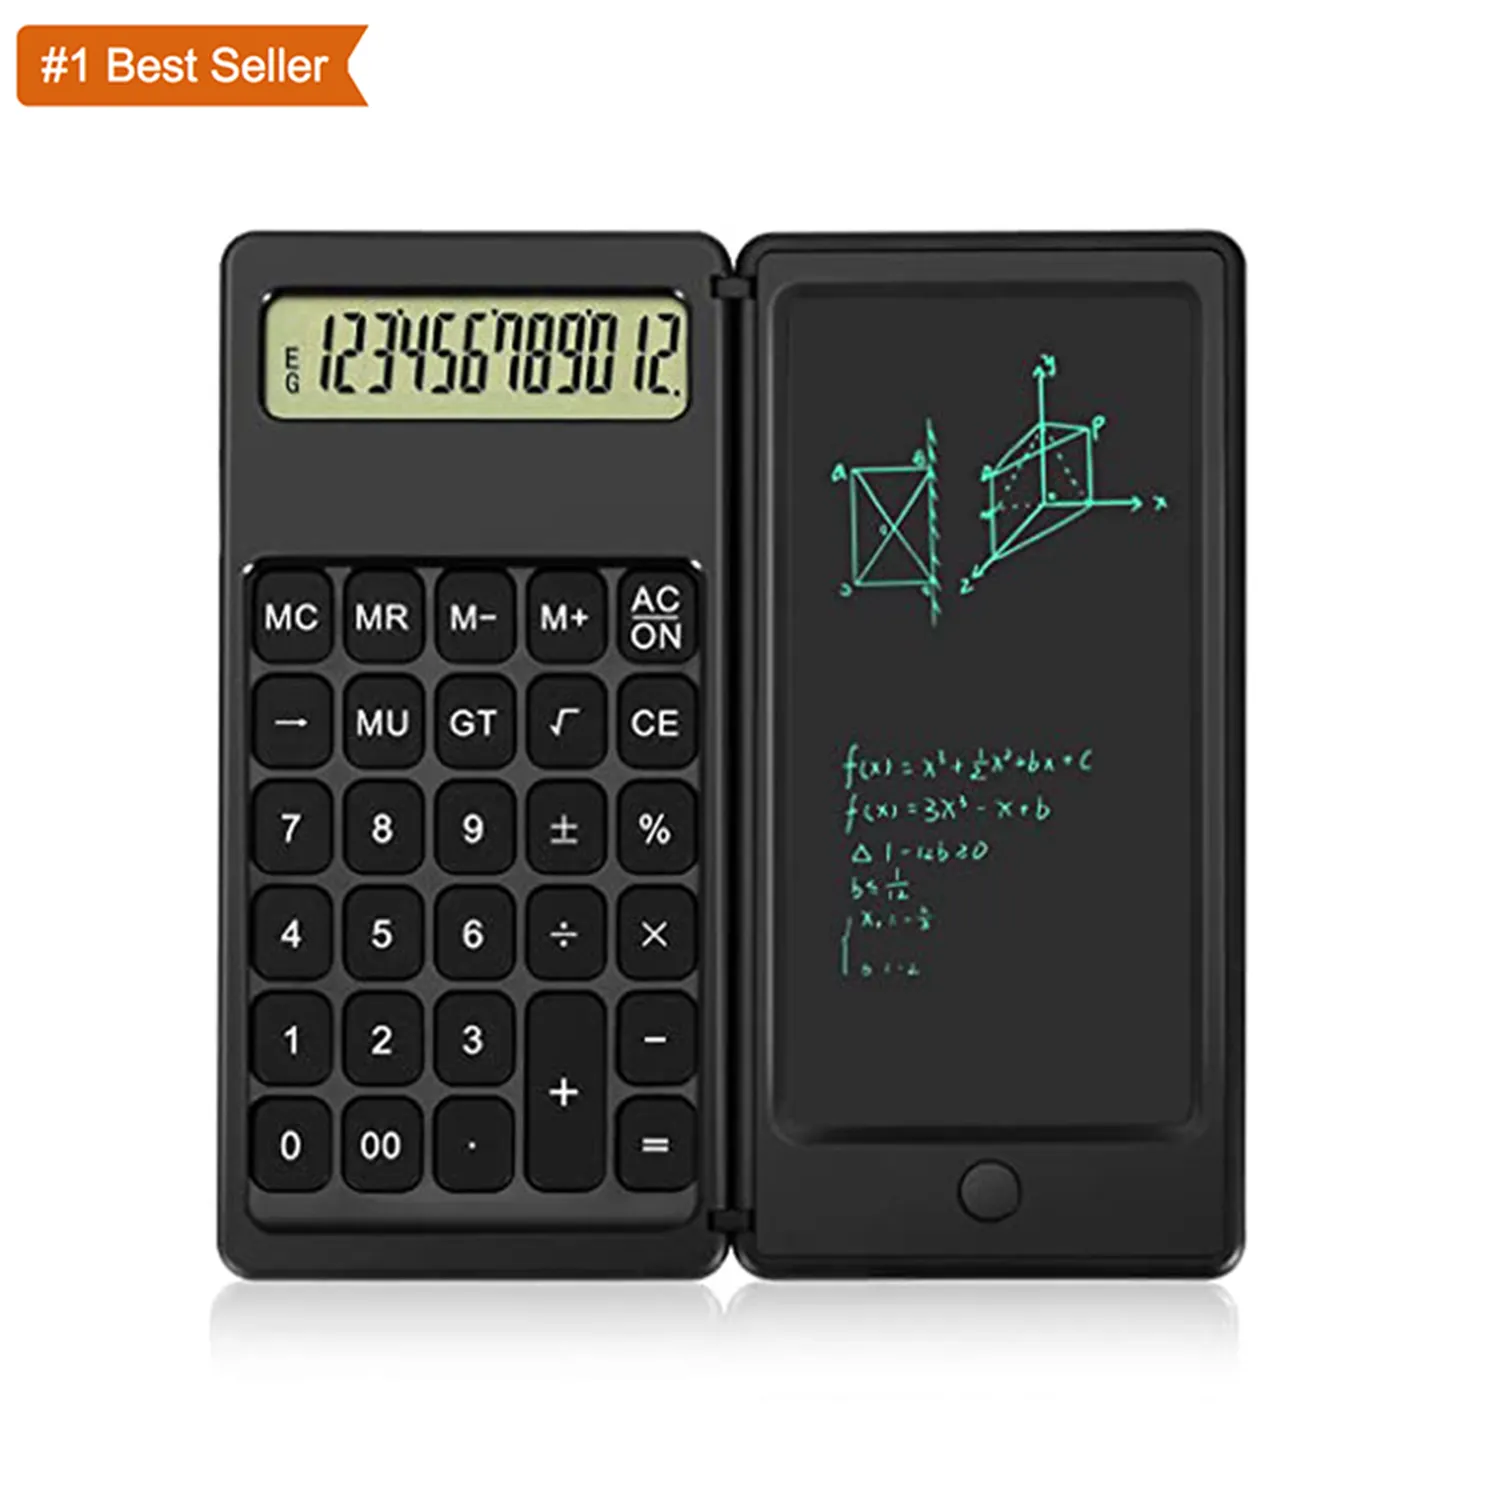 Calcolatrice da tavolo Jumon calcolatrice da tavolo con tavoletta da scrittura forniture Premium per studenti delle scuole superiori o ufficio